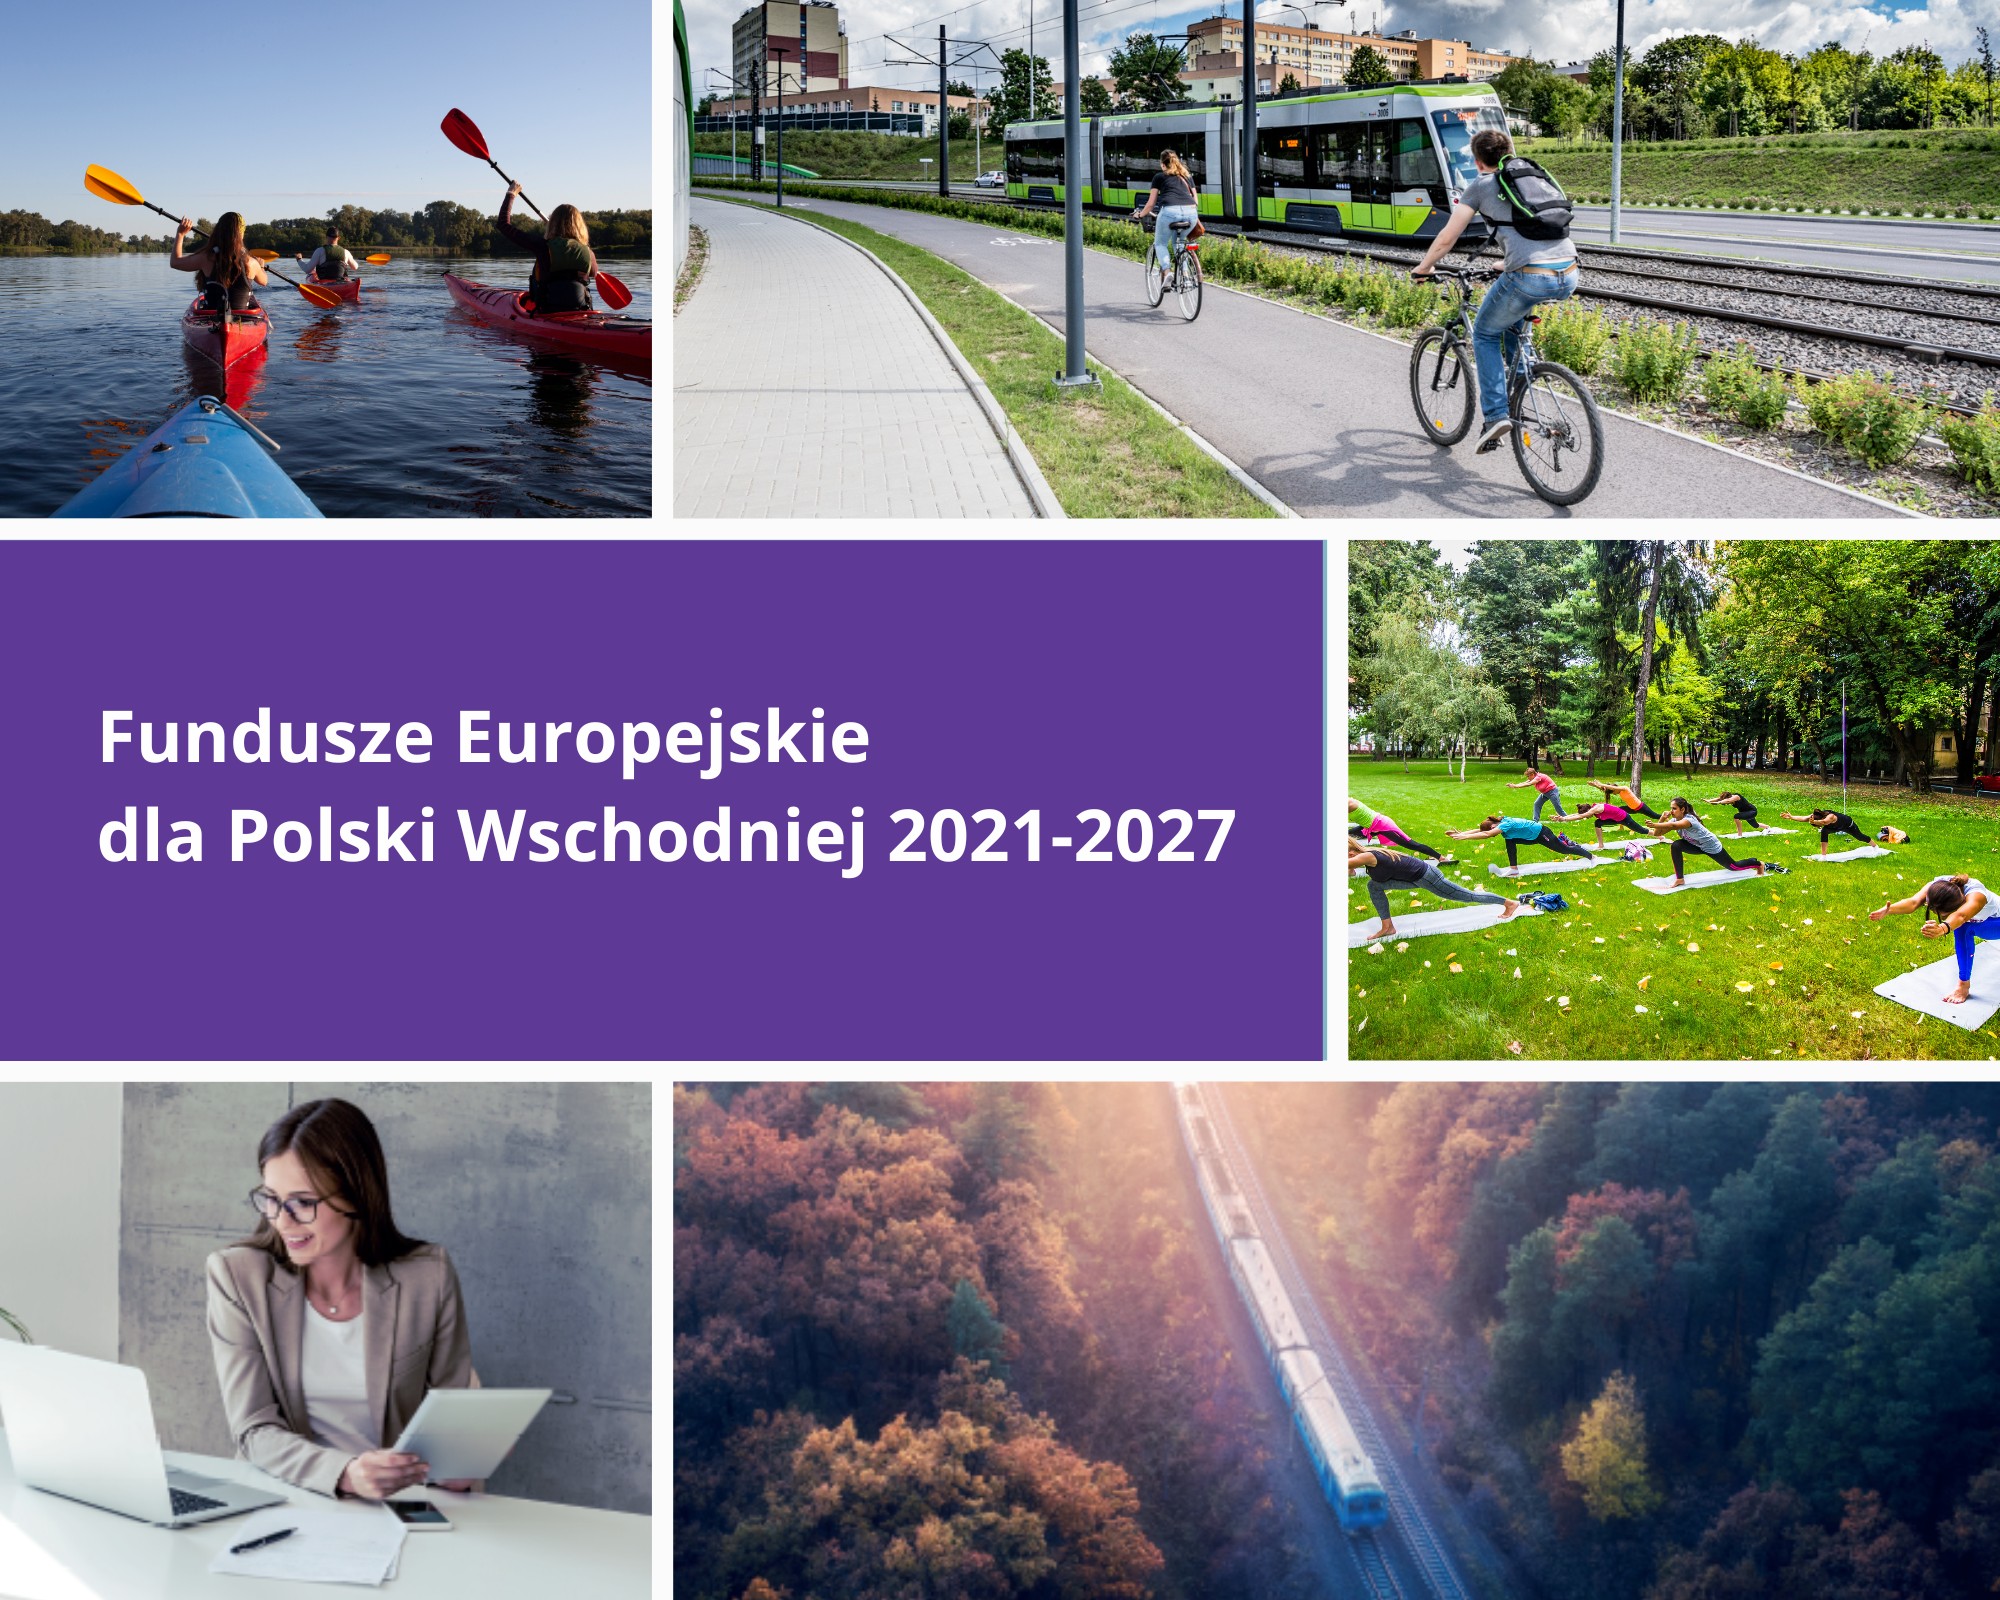 Fundusze Europejskie dla Polski Wschodniej 2021-2027